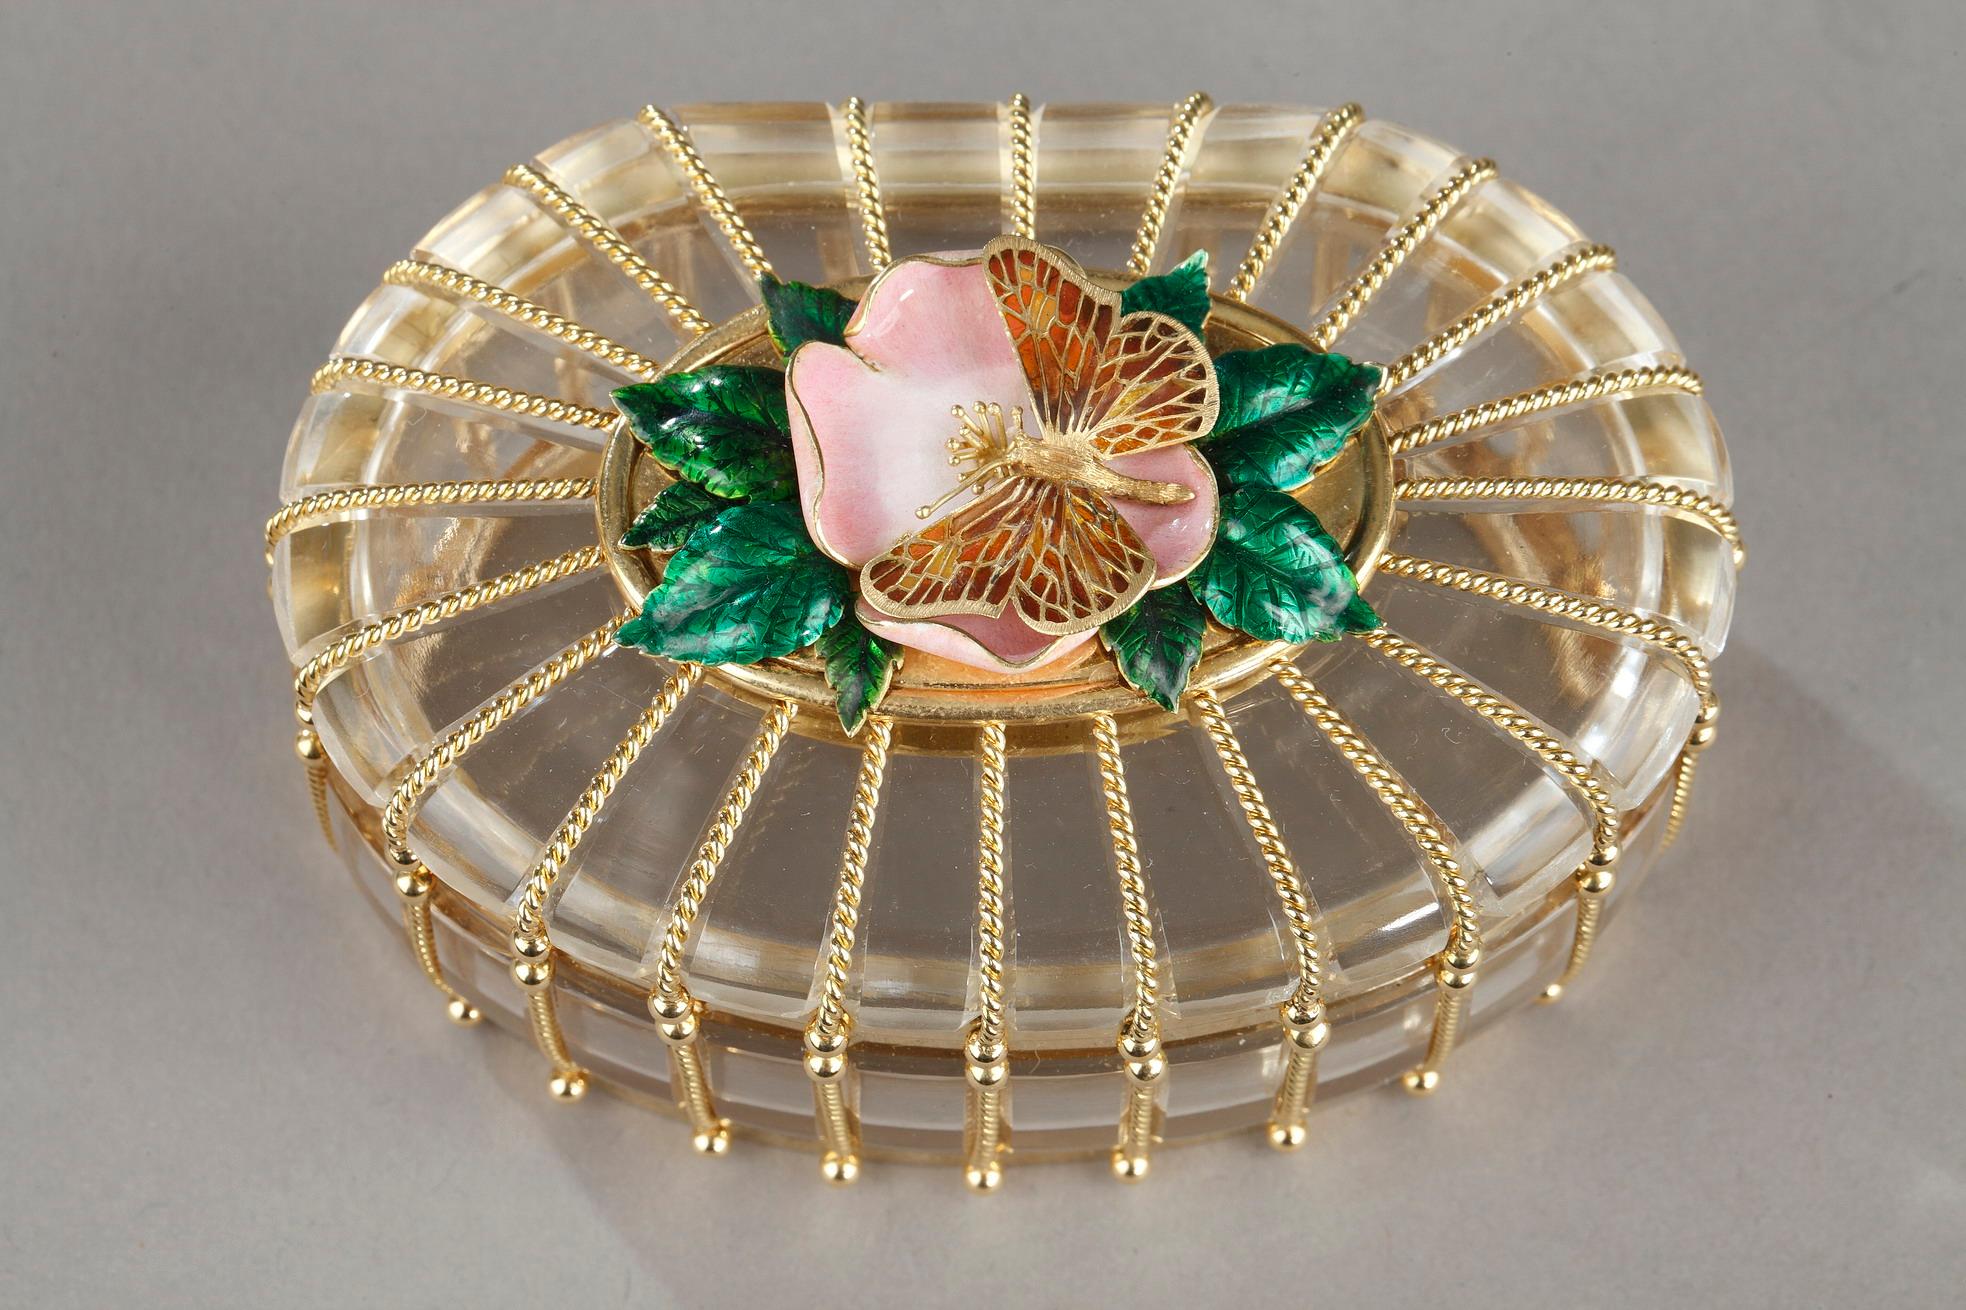 De forme ovale, le couvercle est orné d'une fleur en émail rose et de feuilles vertes sur lesquelles repose un papillon en or aux ailes percées, les montures en cage de corde torsadée, le bord de la base est gravé 